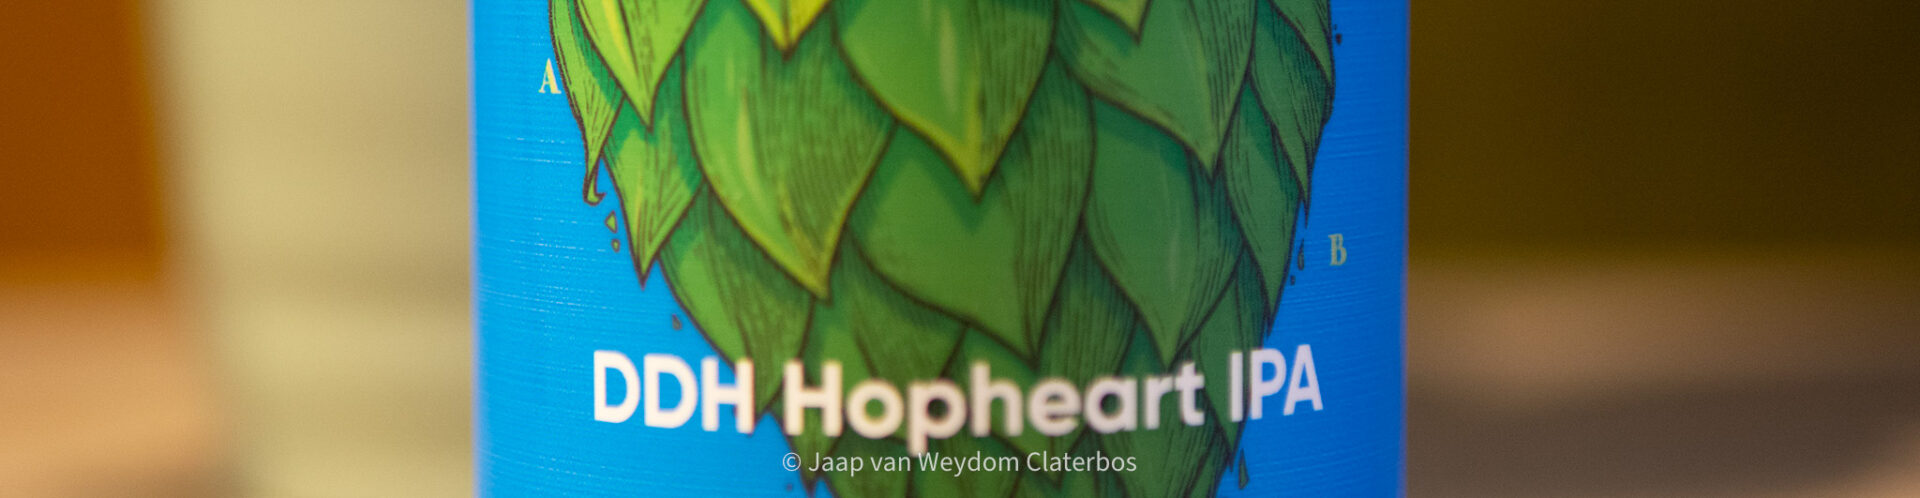 DDH Hopheart IPA | Ārpus Brewing Co.